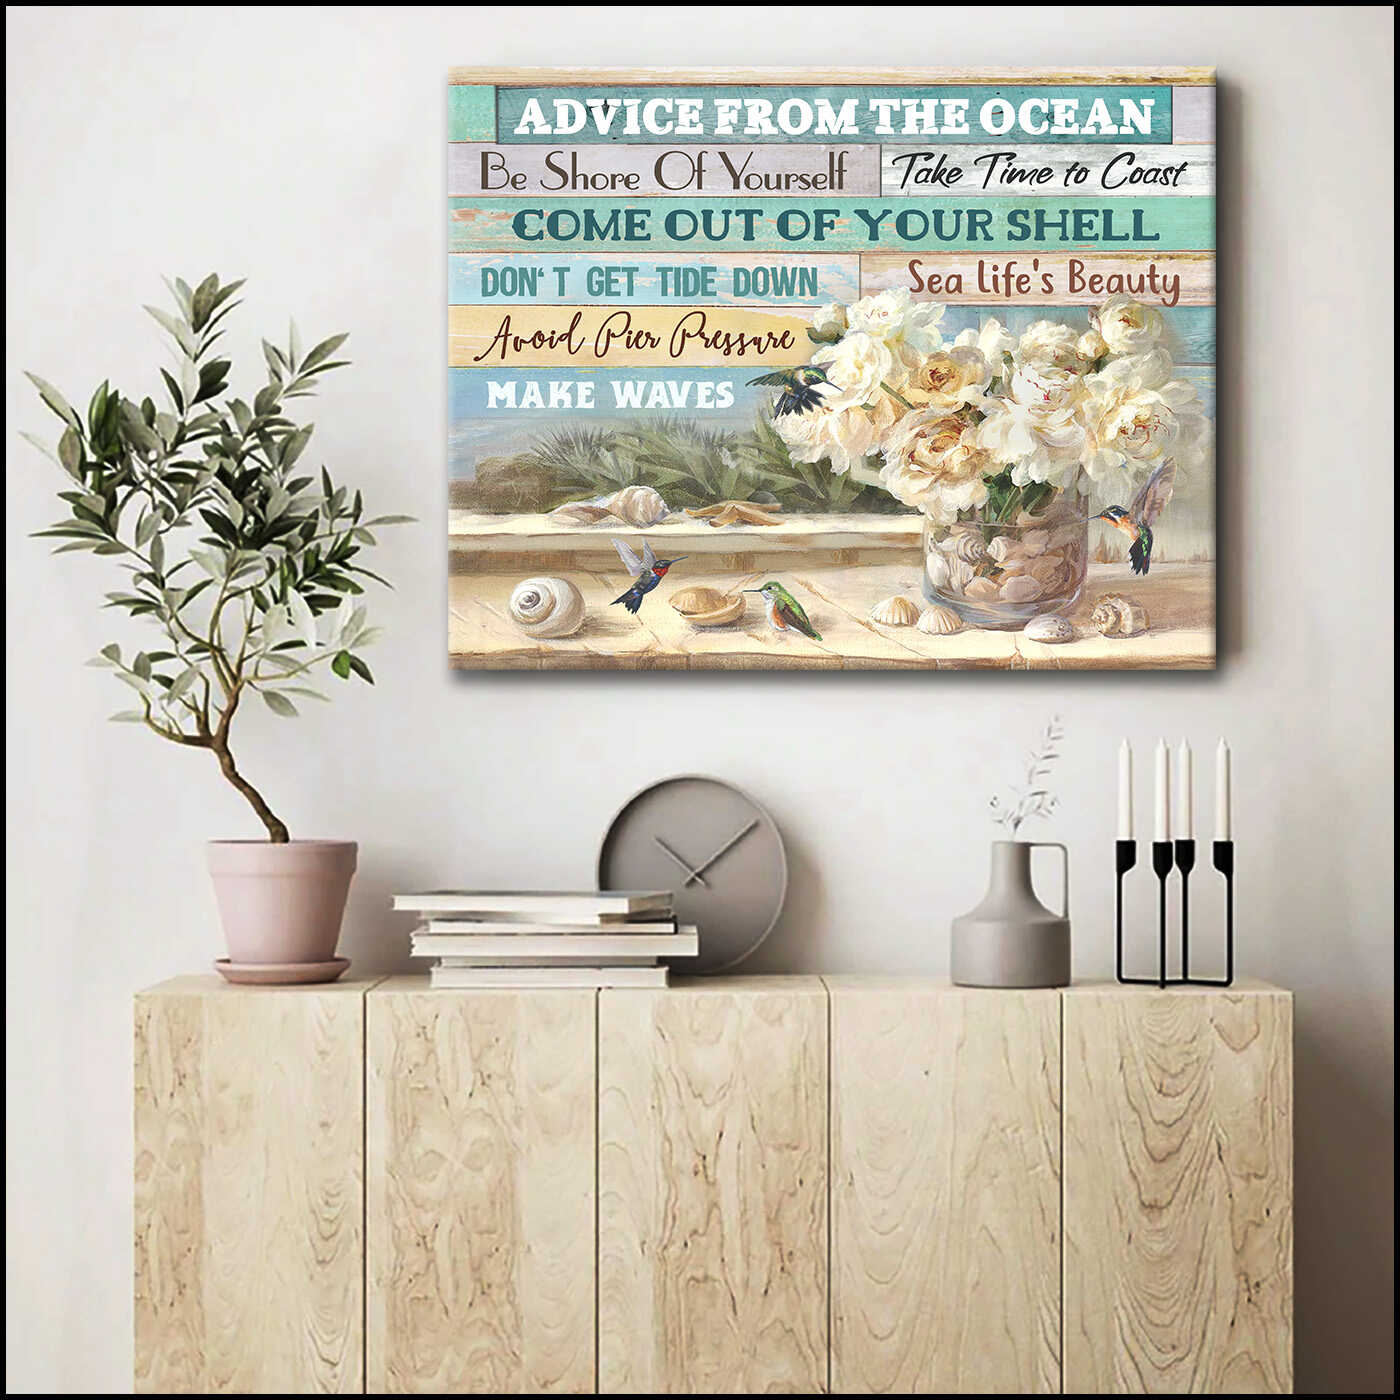 Beach House And Hummingbirds Advice From The Ocean Canvas Prints Wall Art Decor